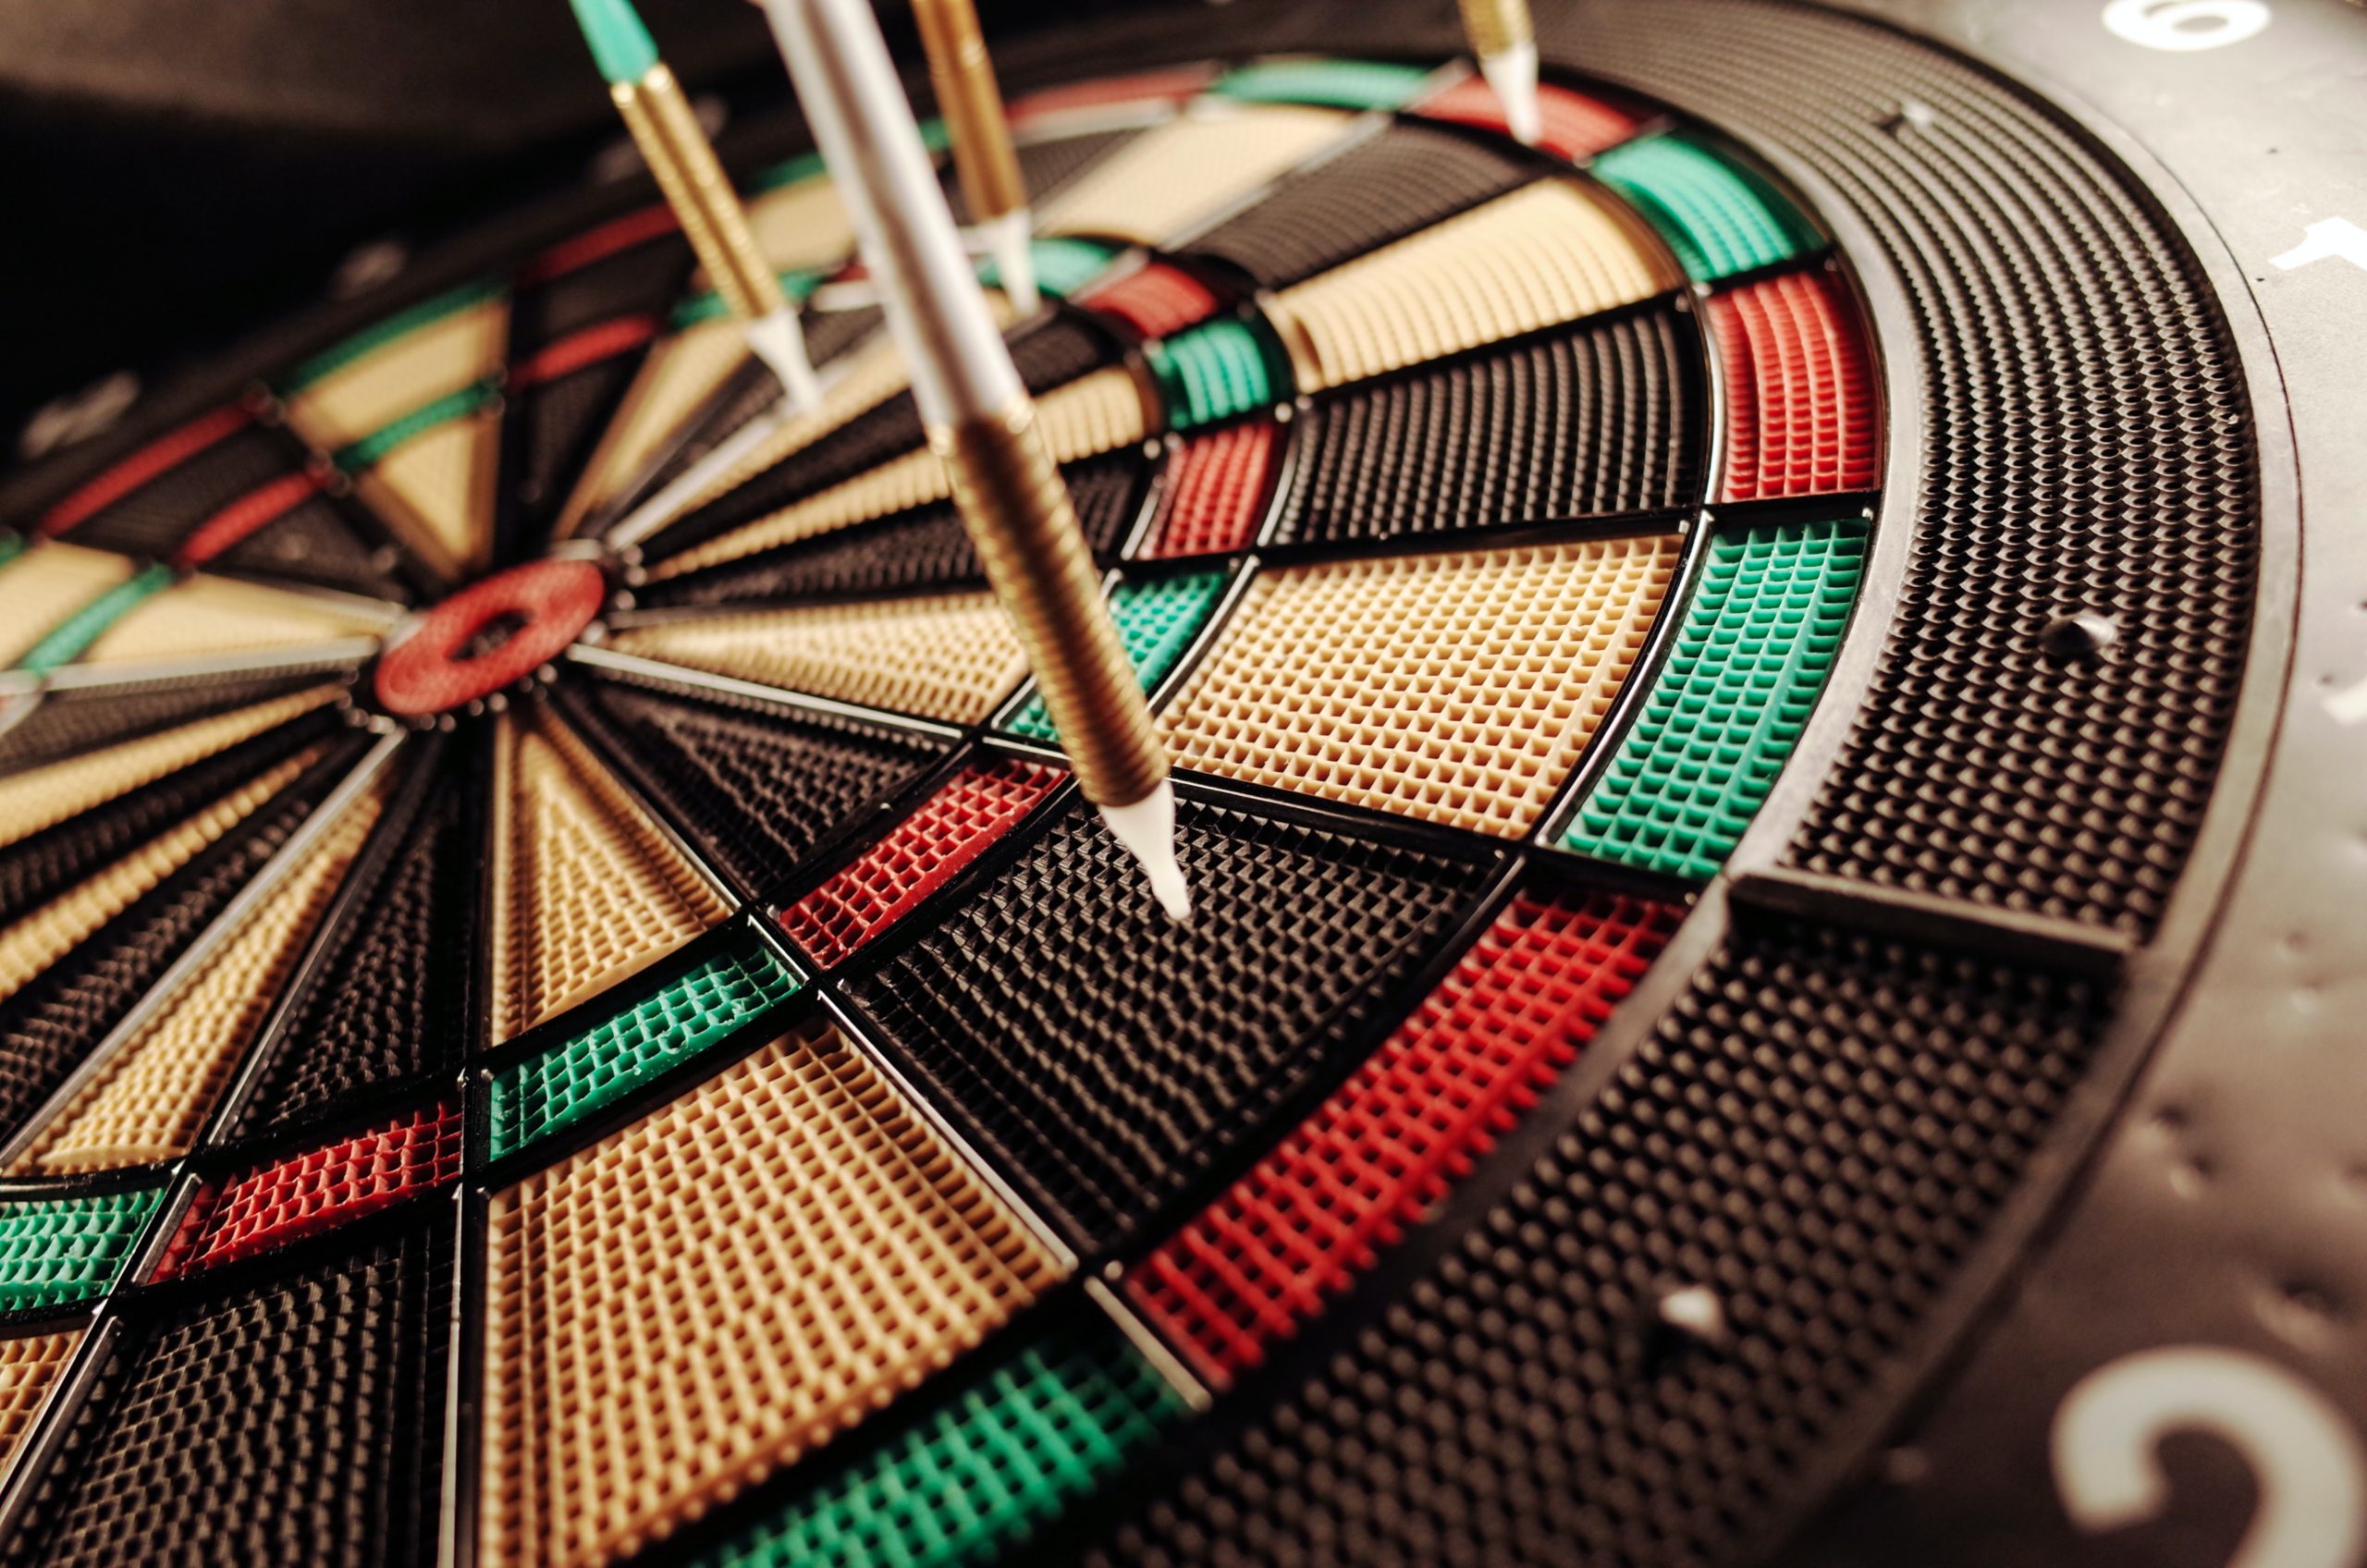 الهدف في لعبة dartboard التي تمثل مهمة الشركة في خطط الاتصال.